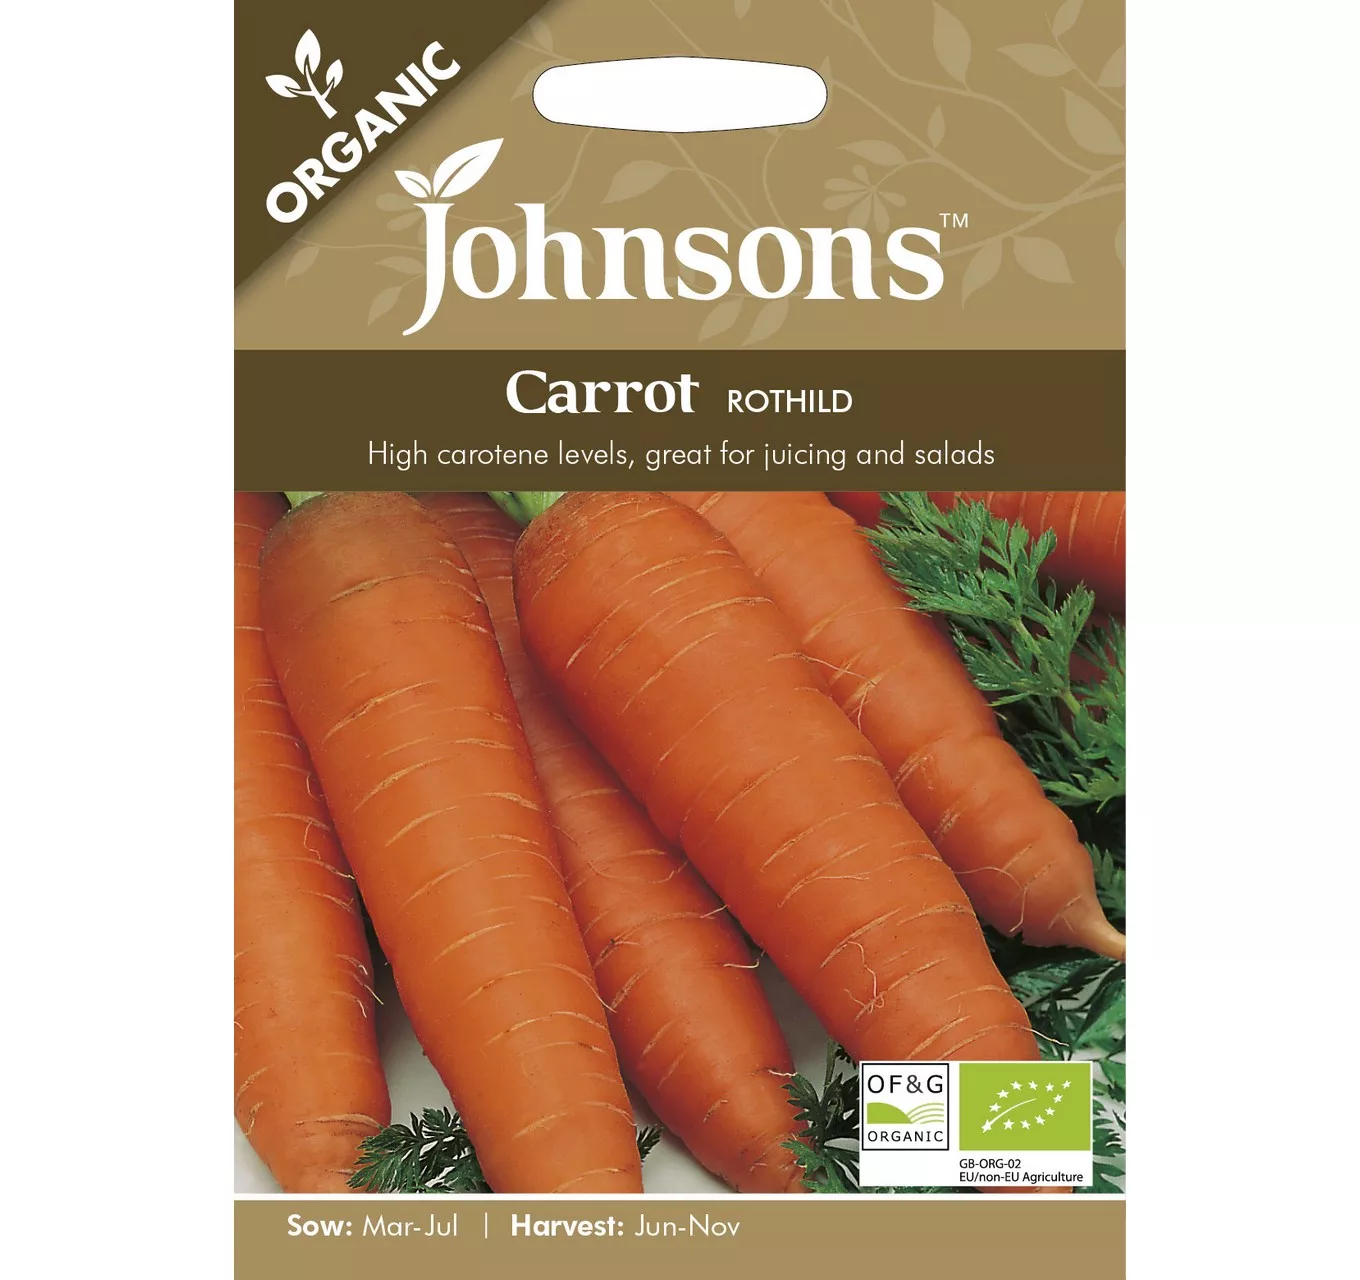 ORG Carrot Rothild